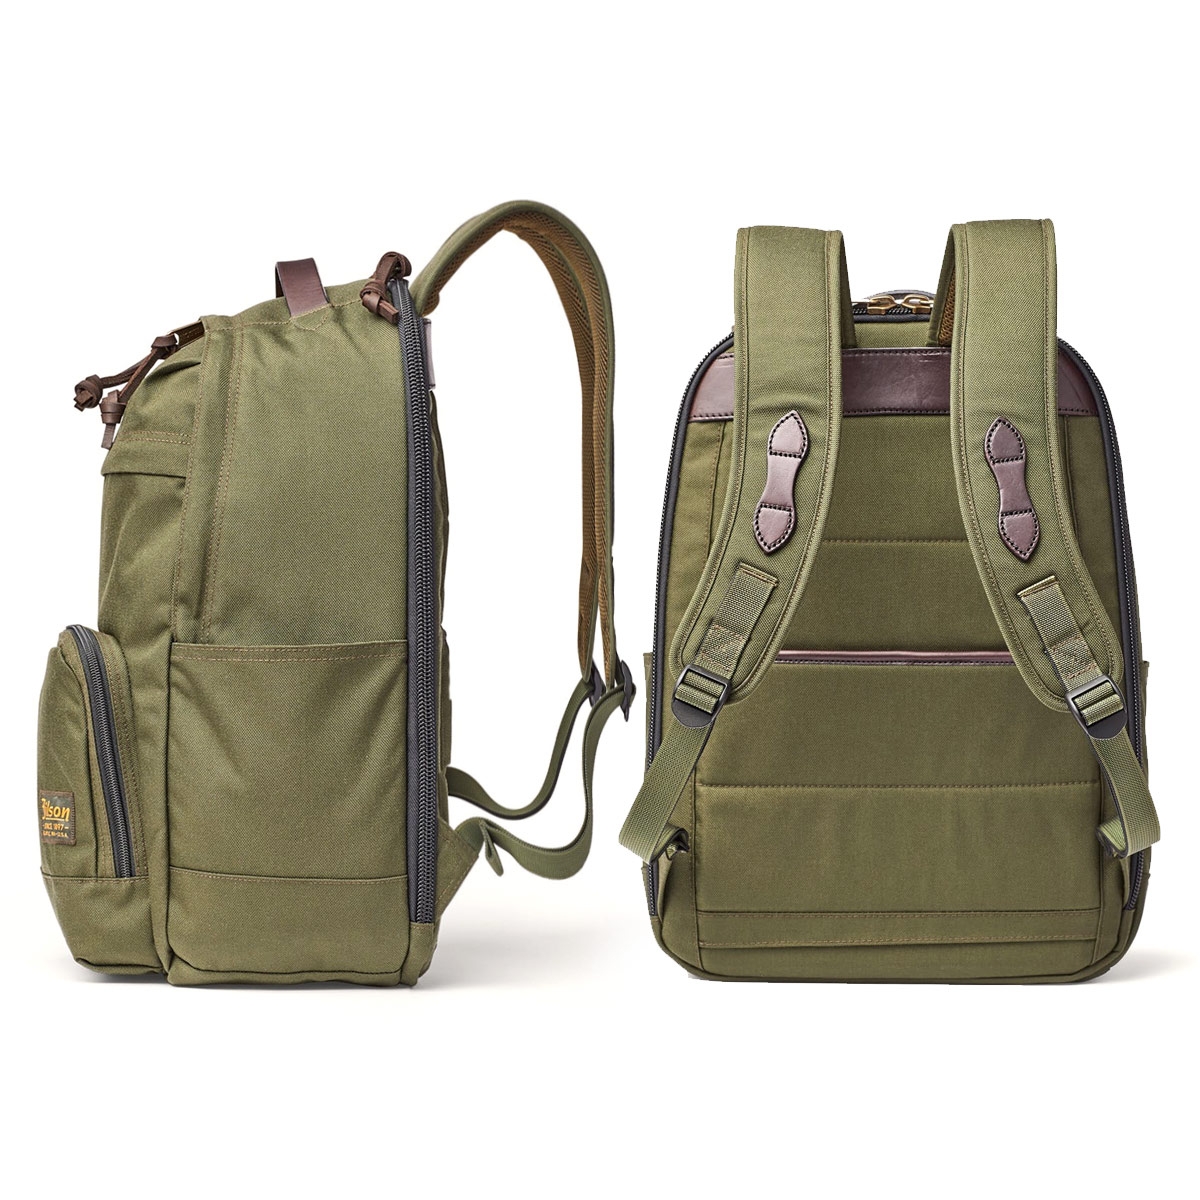 Filson Dryden Backpack 20152980 Otter Green